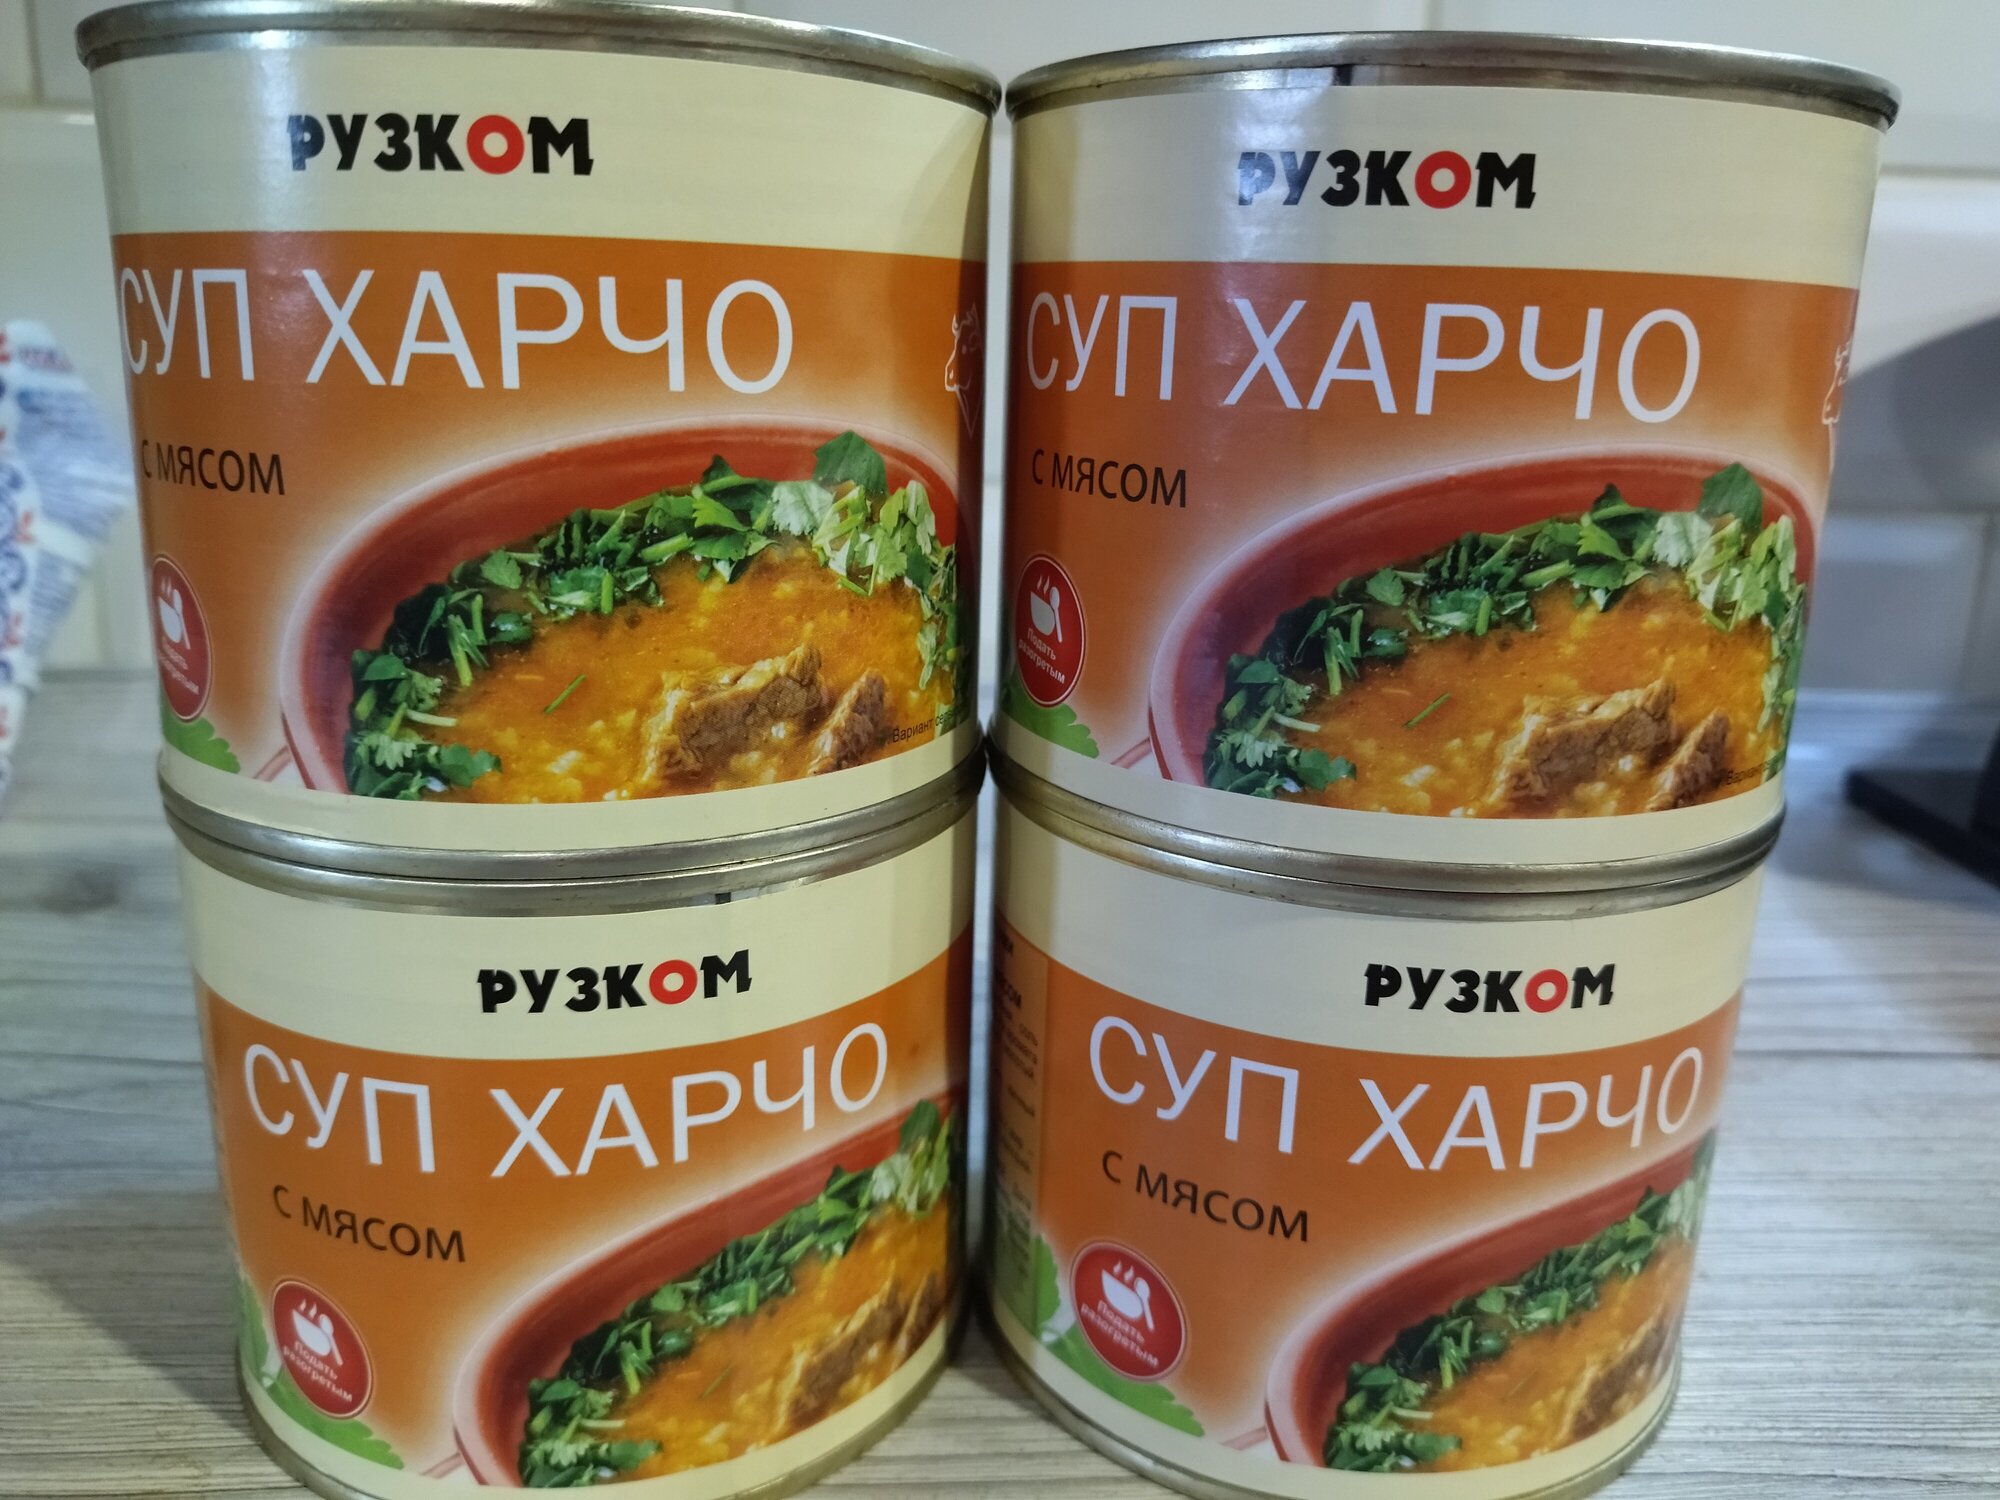 Суп Харчо с мясом "Рузком" 540 гр 4 шт